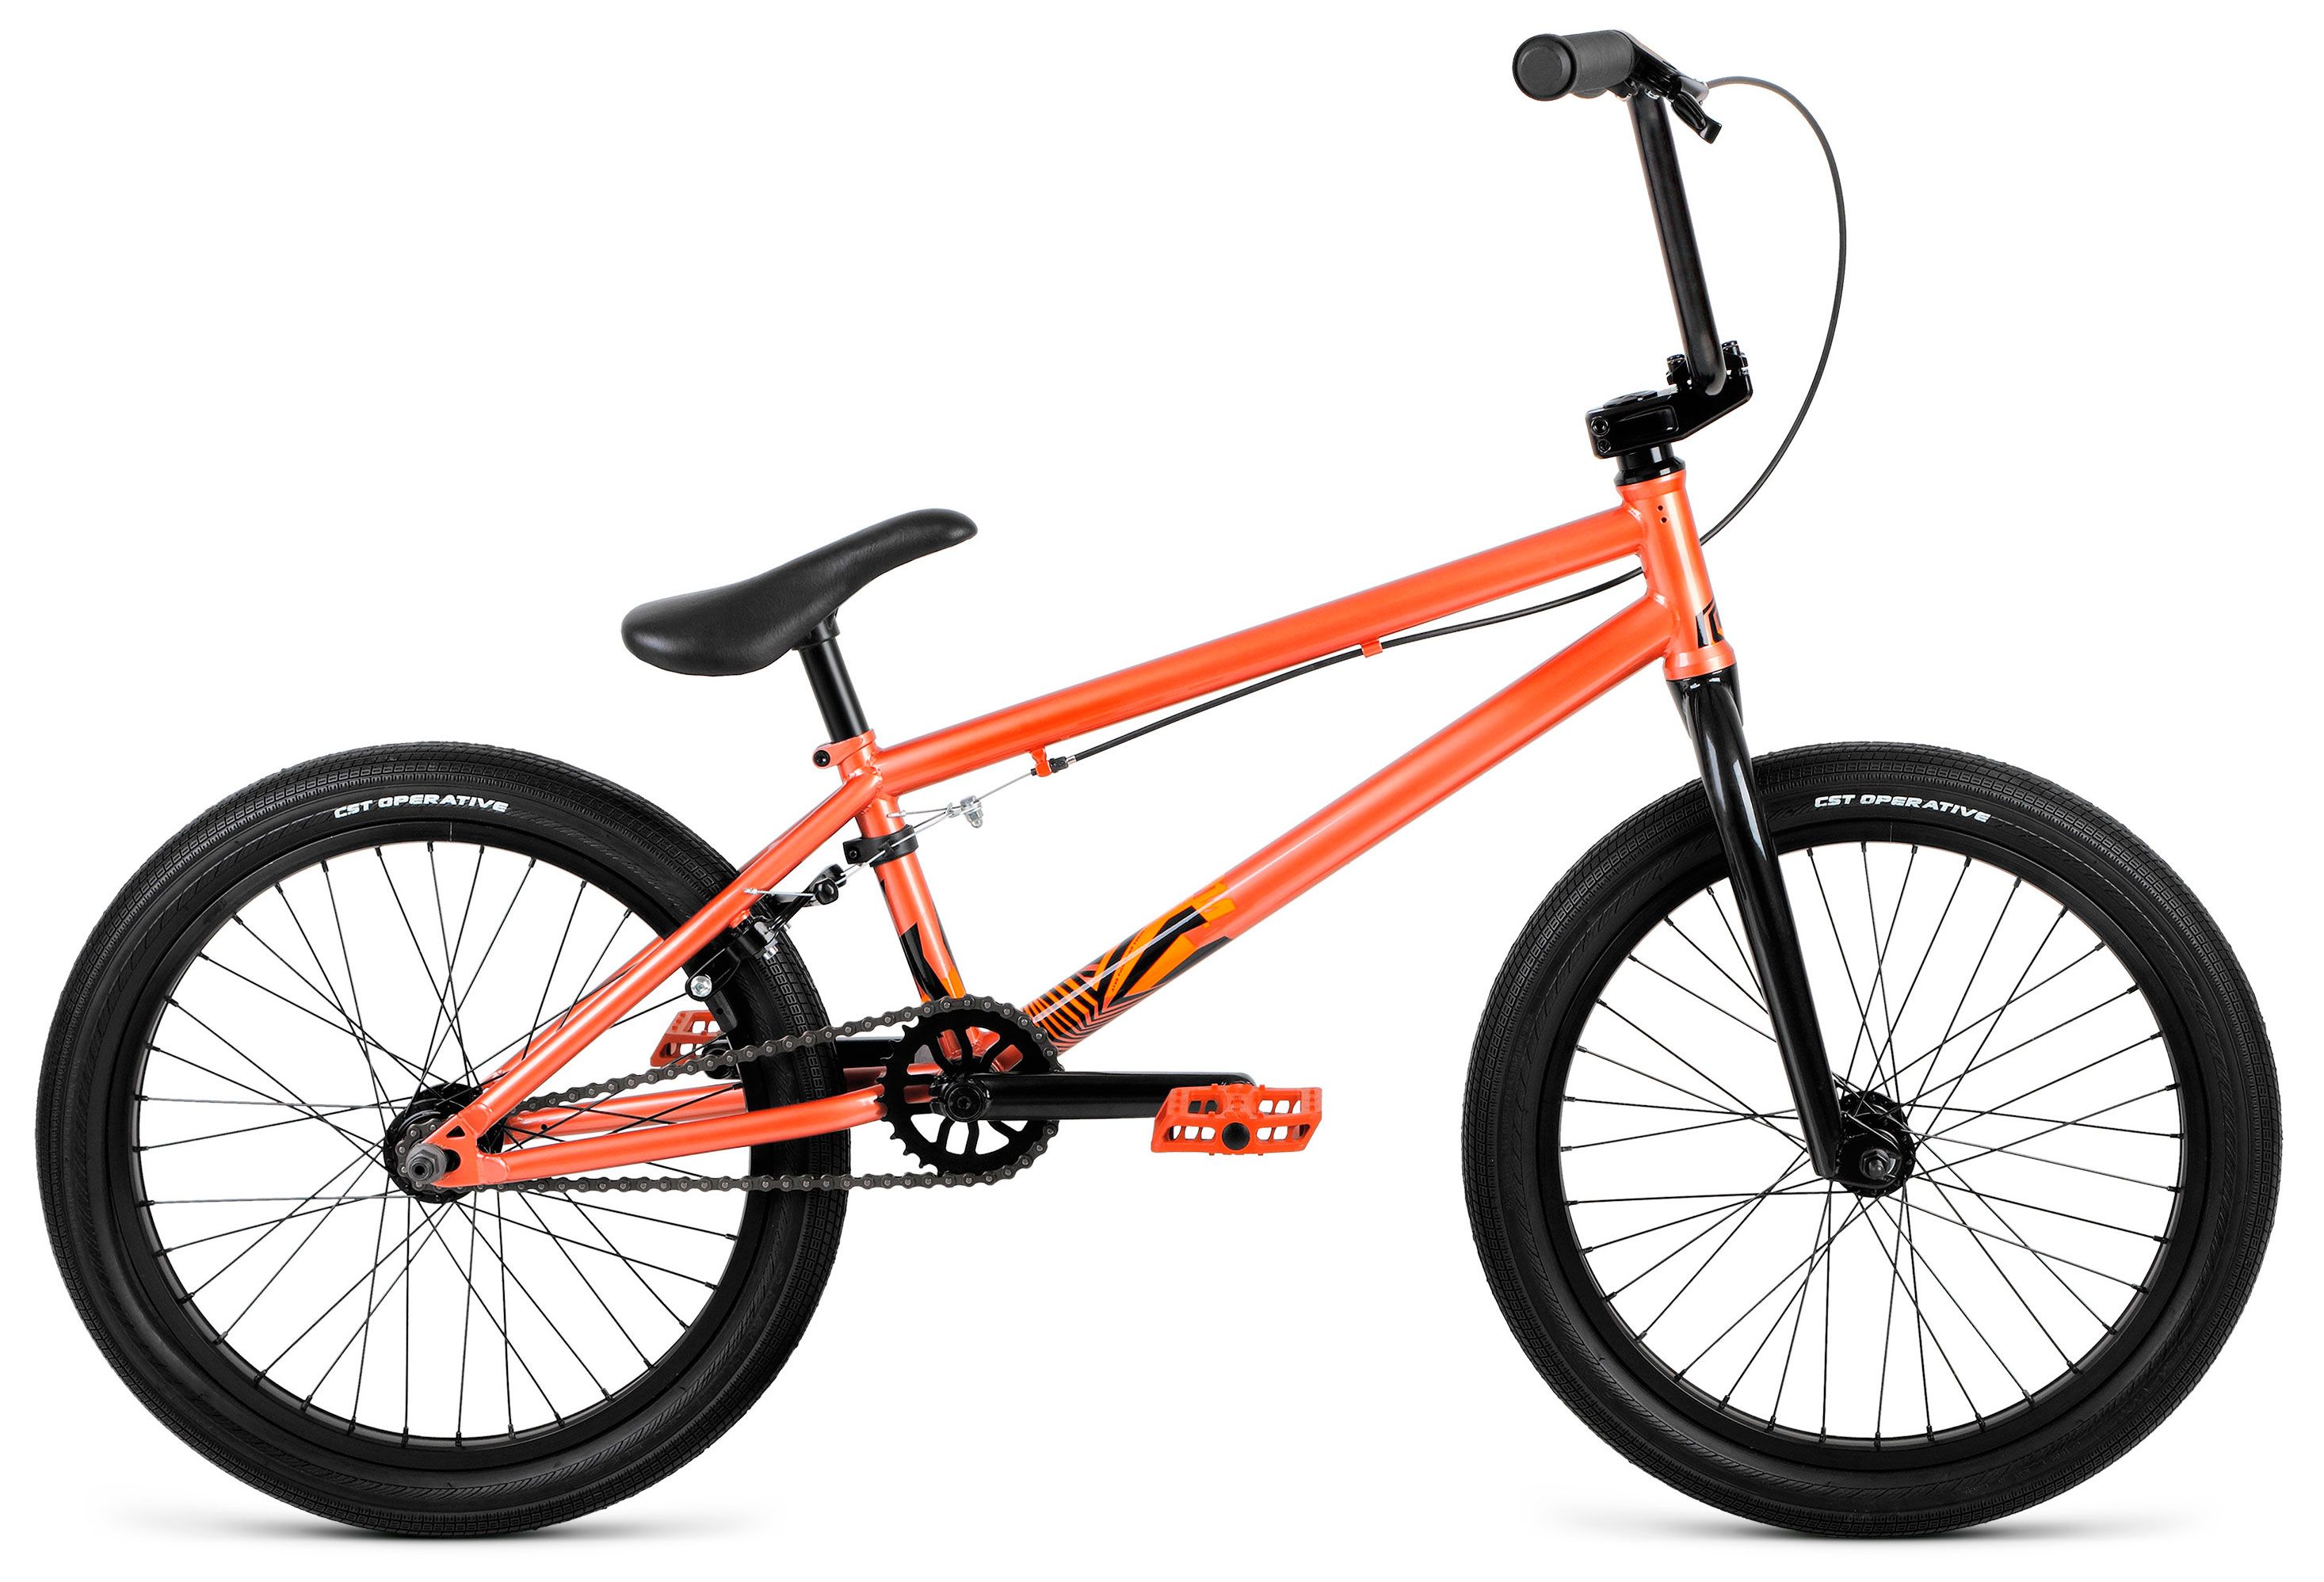  Отзывы о Велосипеде BMX Format 3214 2021